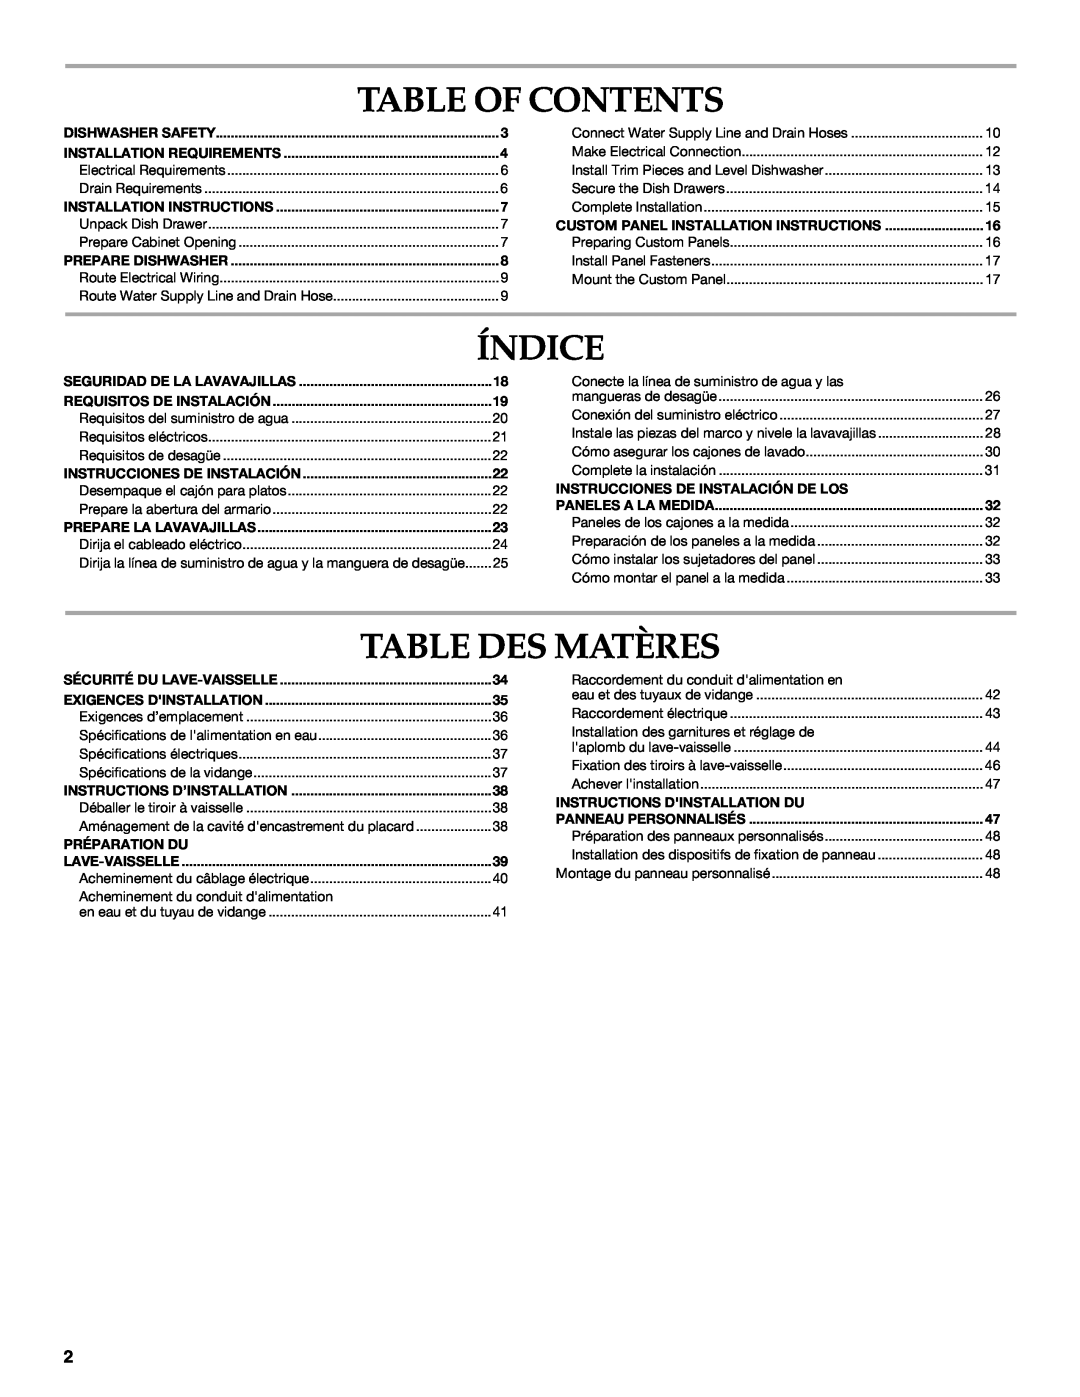 KitchenAid W10216167A Table Of Contents, Índice, Table Des Matères, Instrucciones De Instalación De Los, Préparation Du 